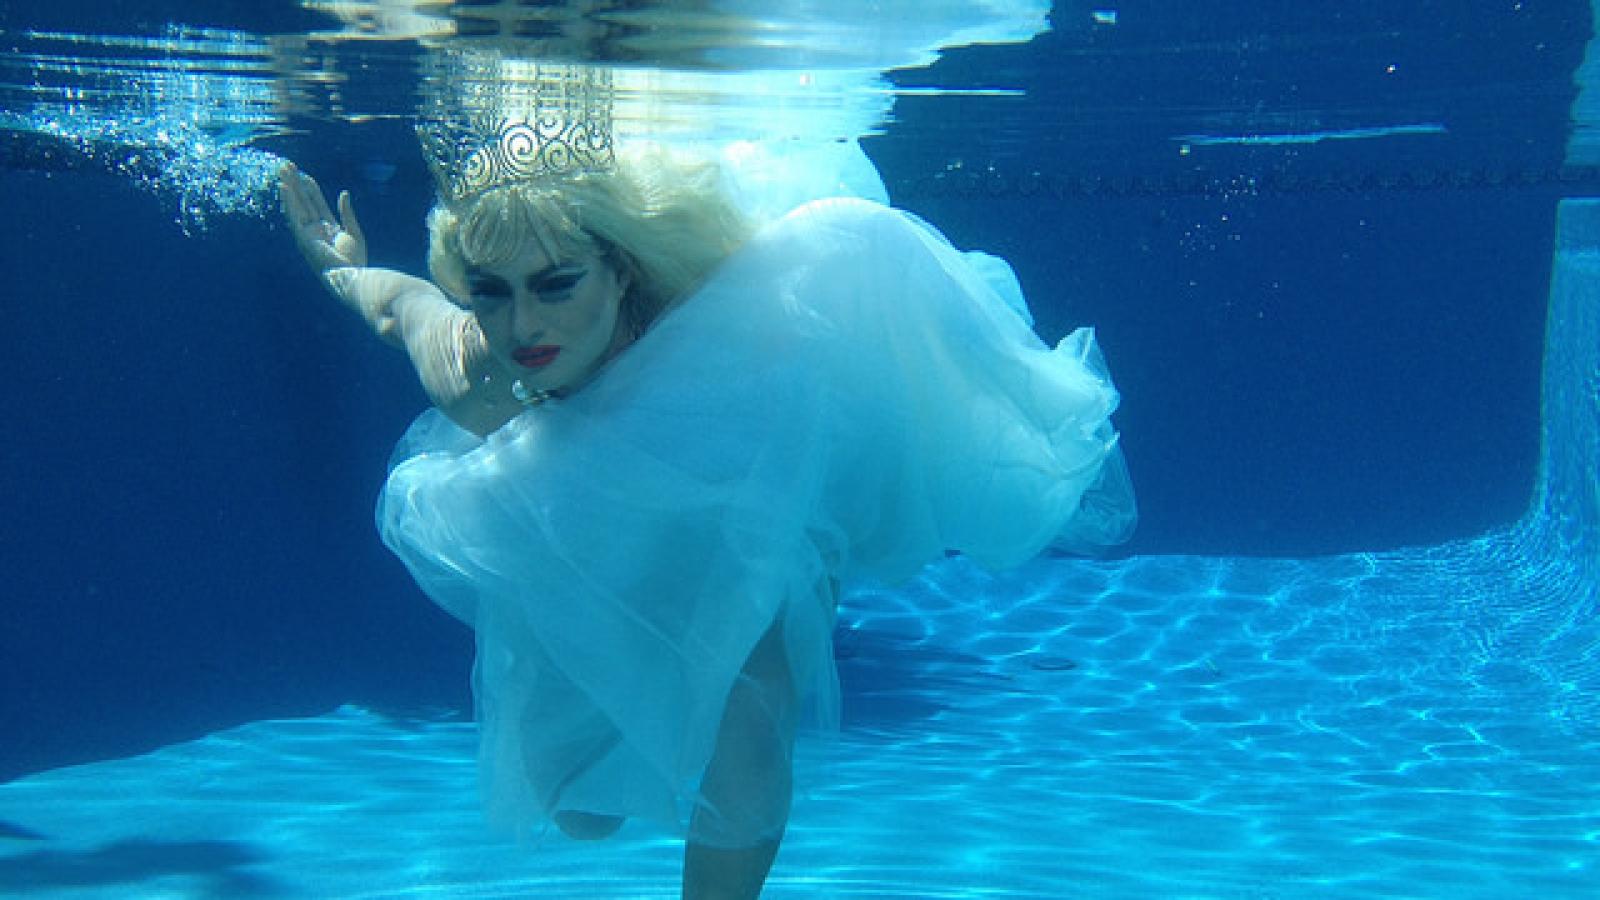 Drag queen in wedding dress underwater